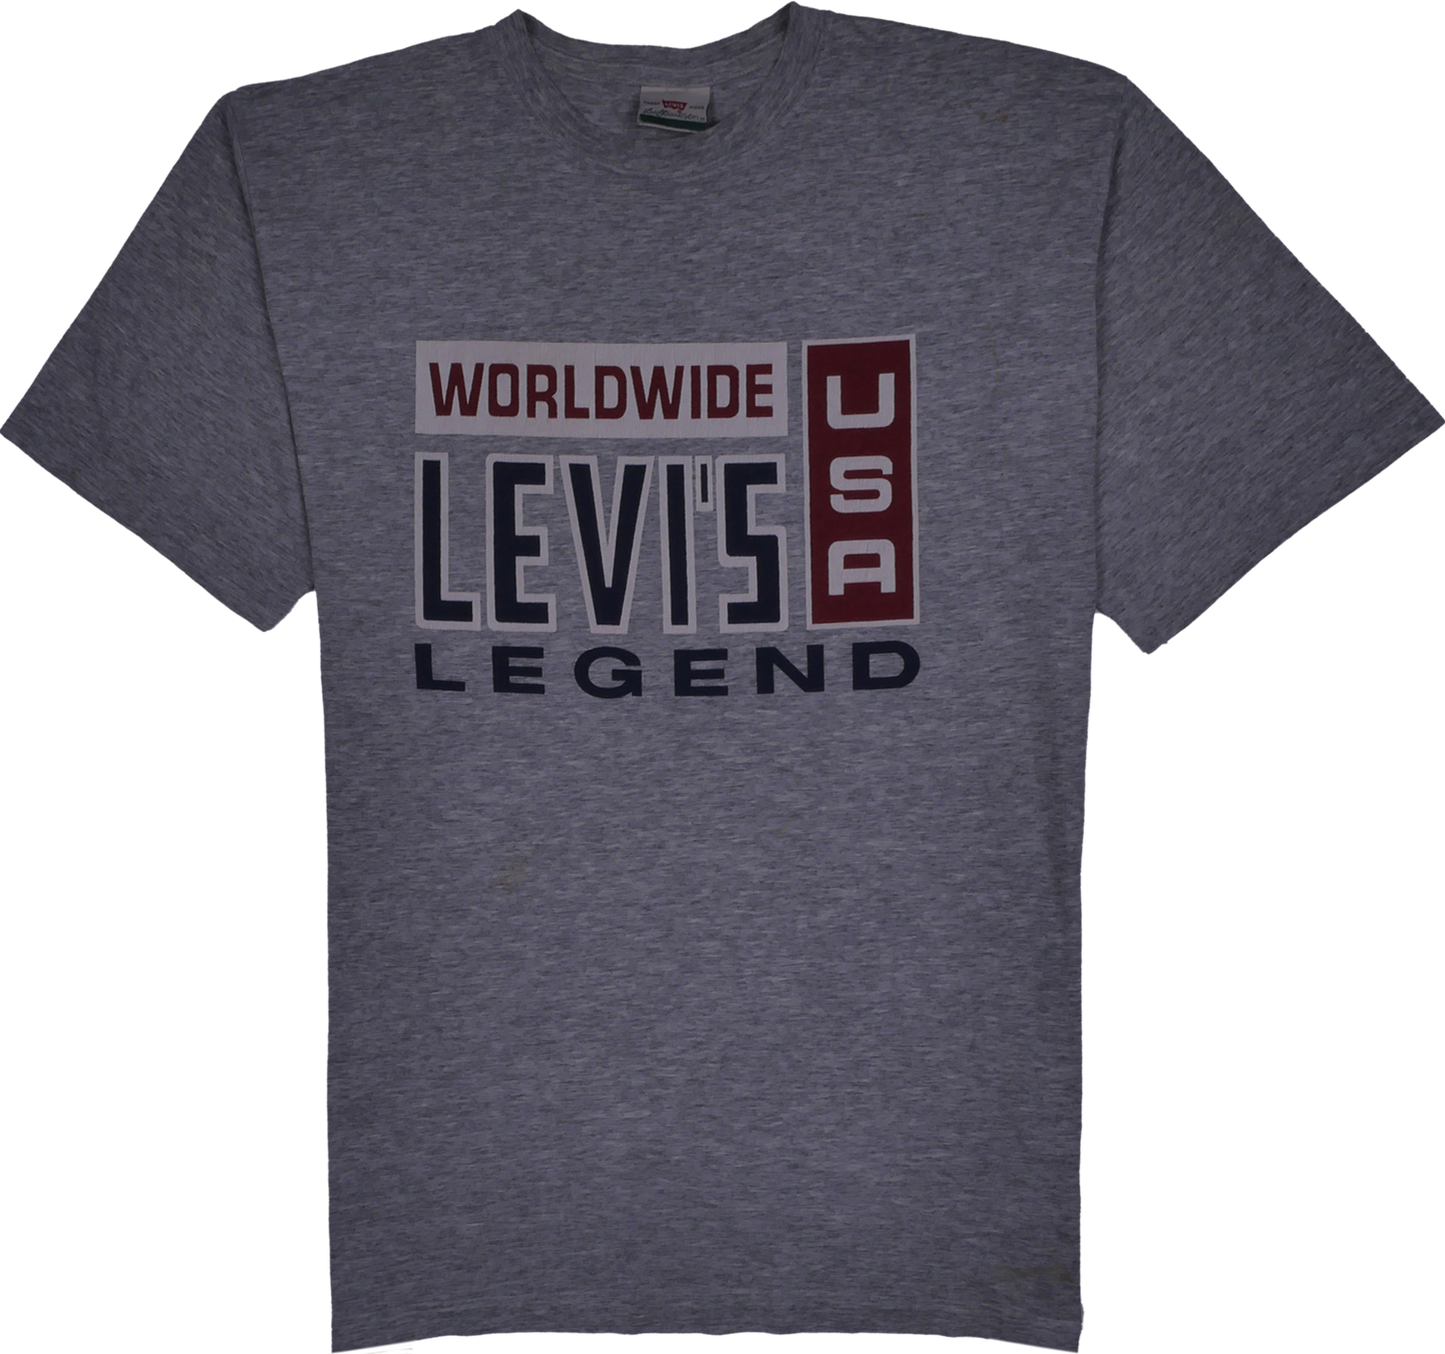 Levi's grau T-Shirt